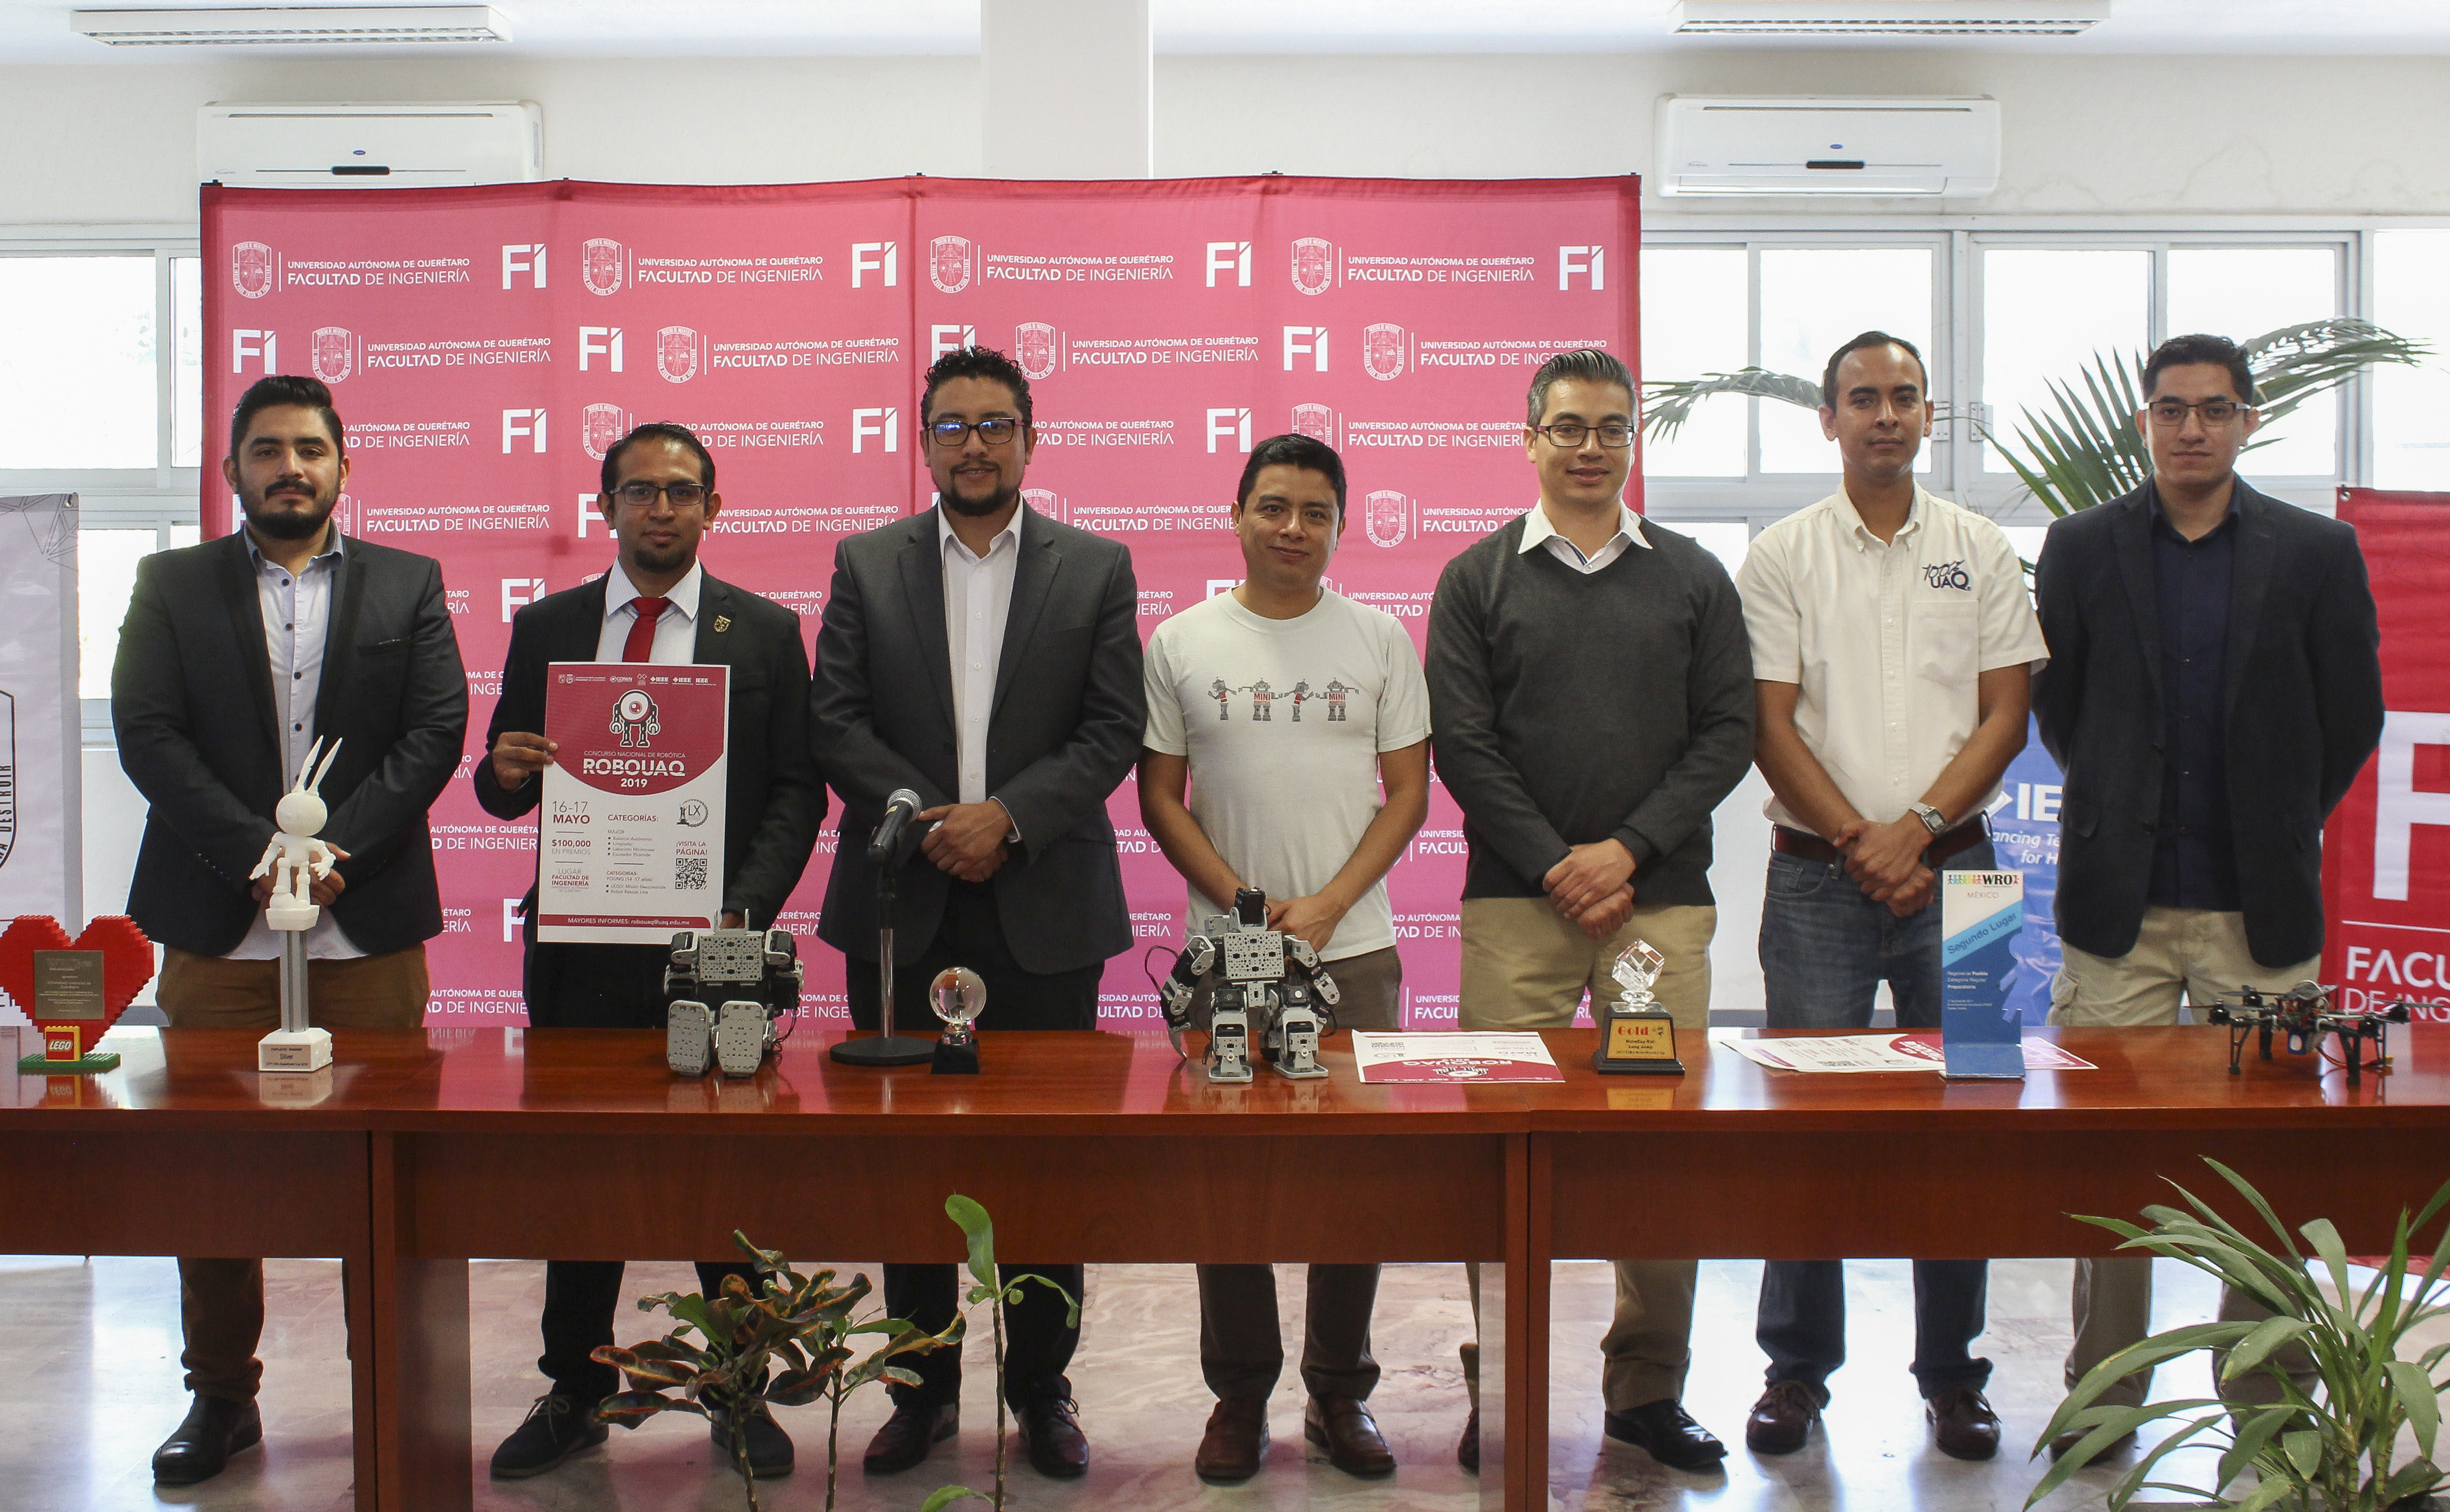  Convocan al RoboUAQ 2019, con 100 mil pesos en premios